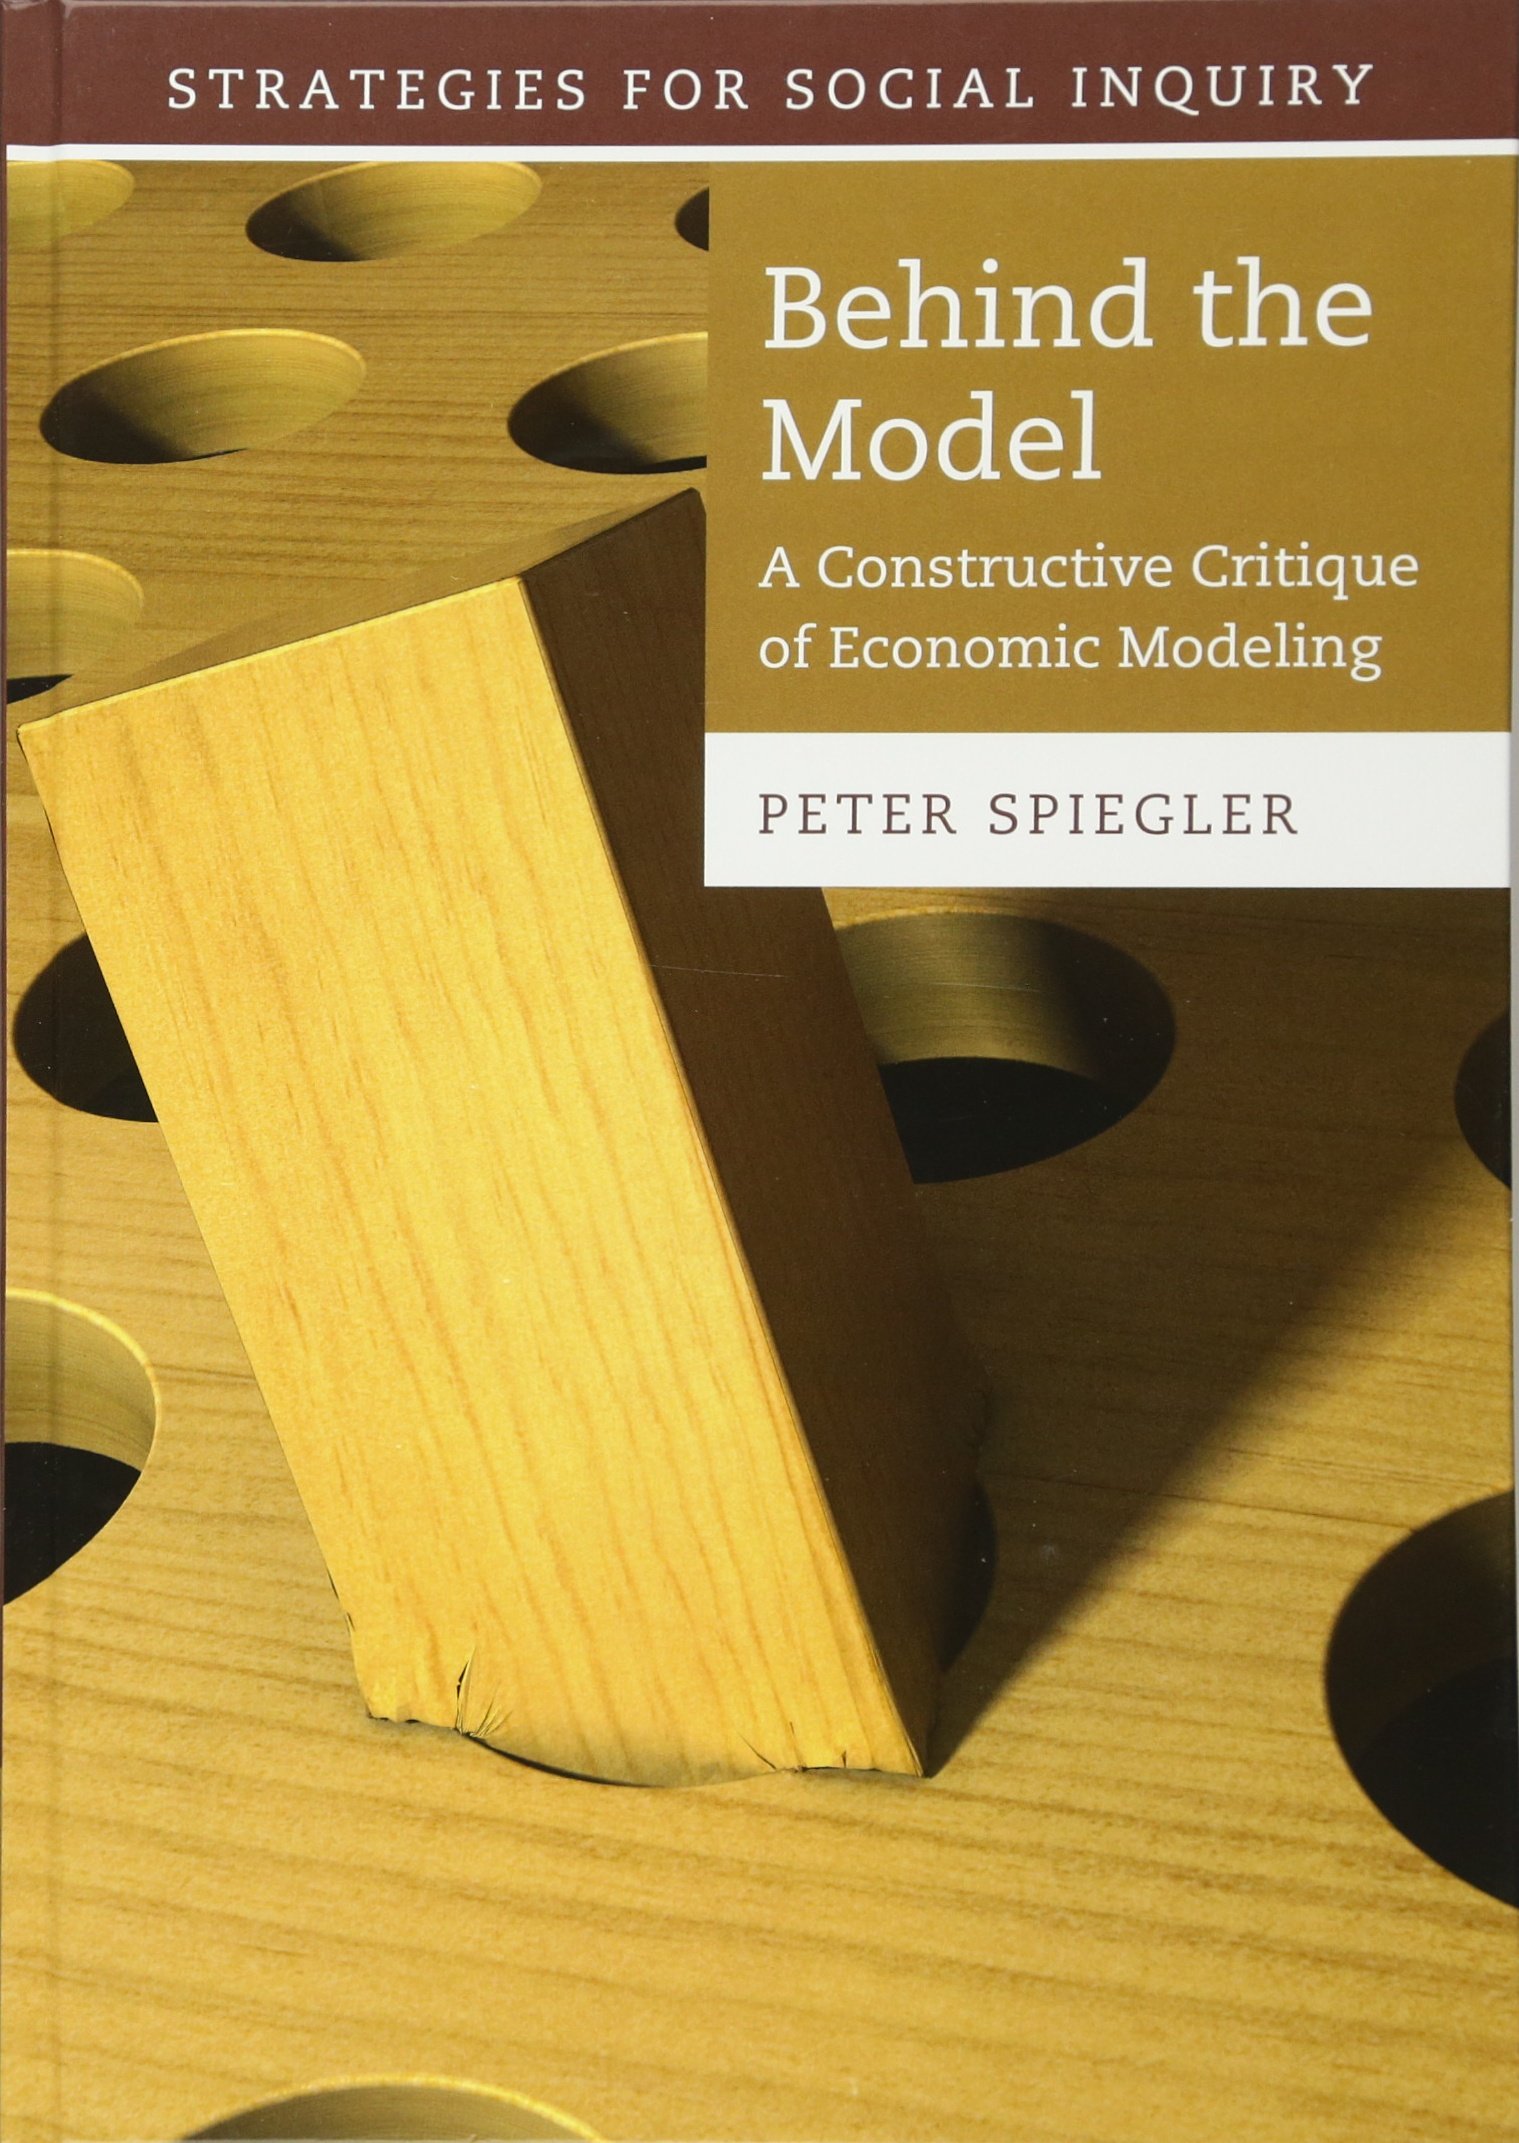 Economic modeling — a constructive critique